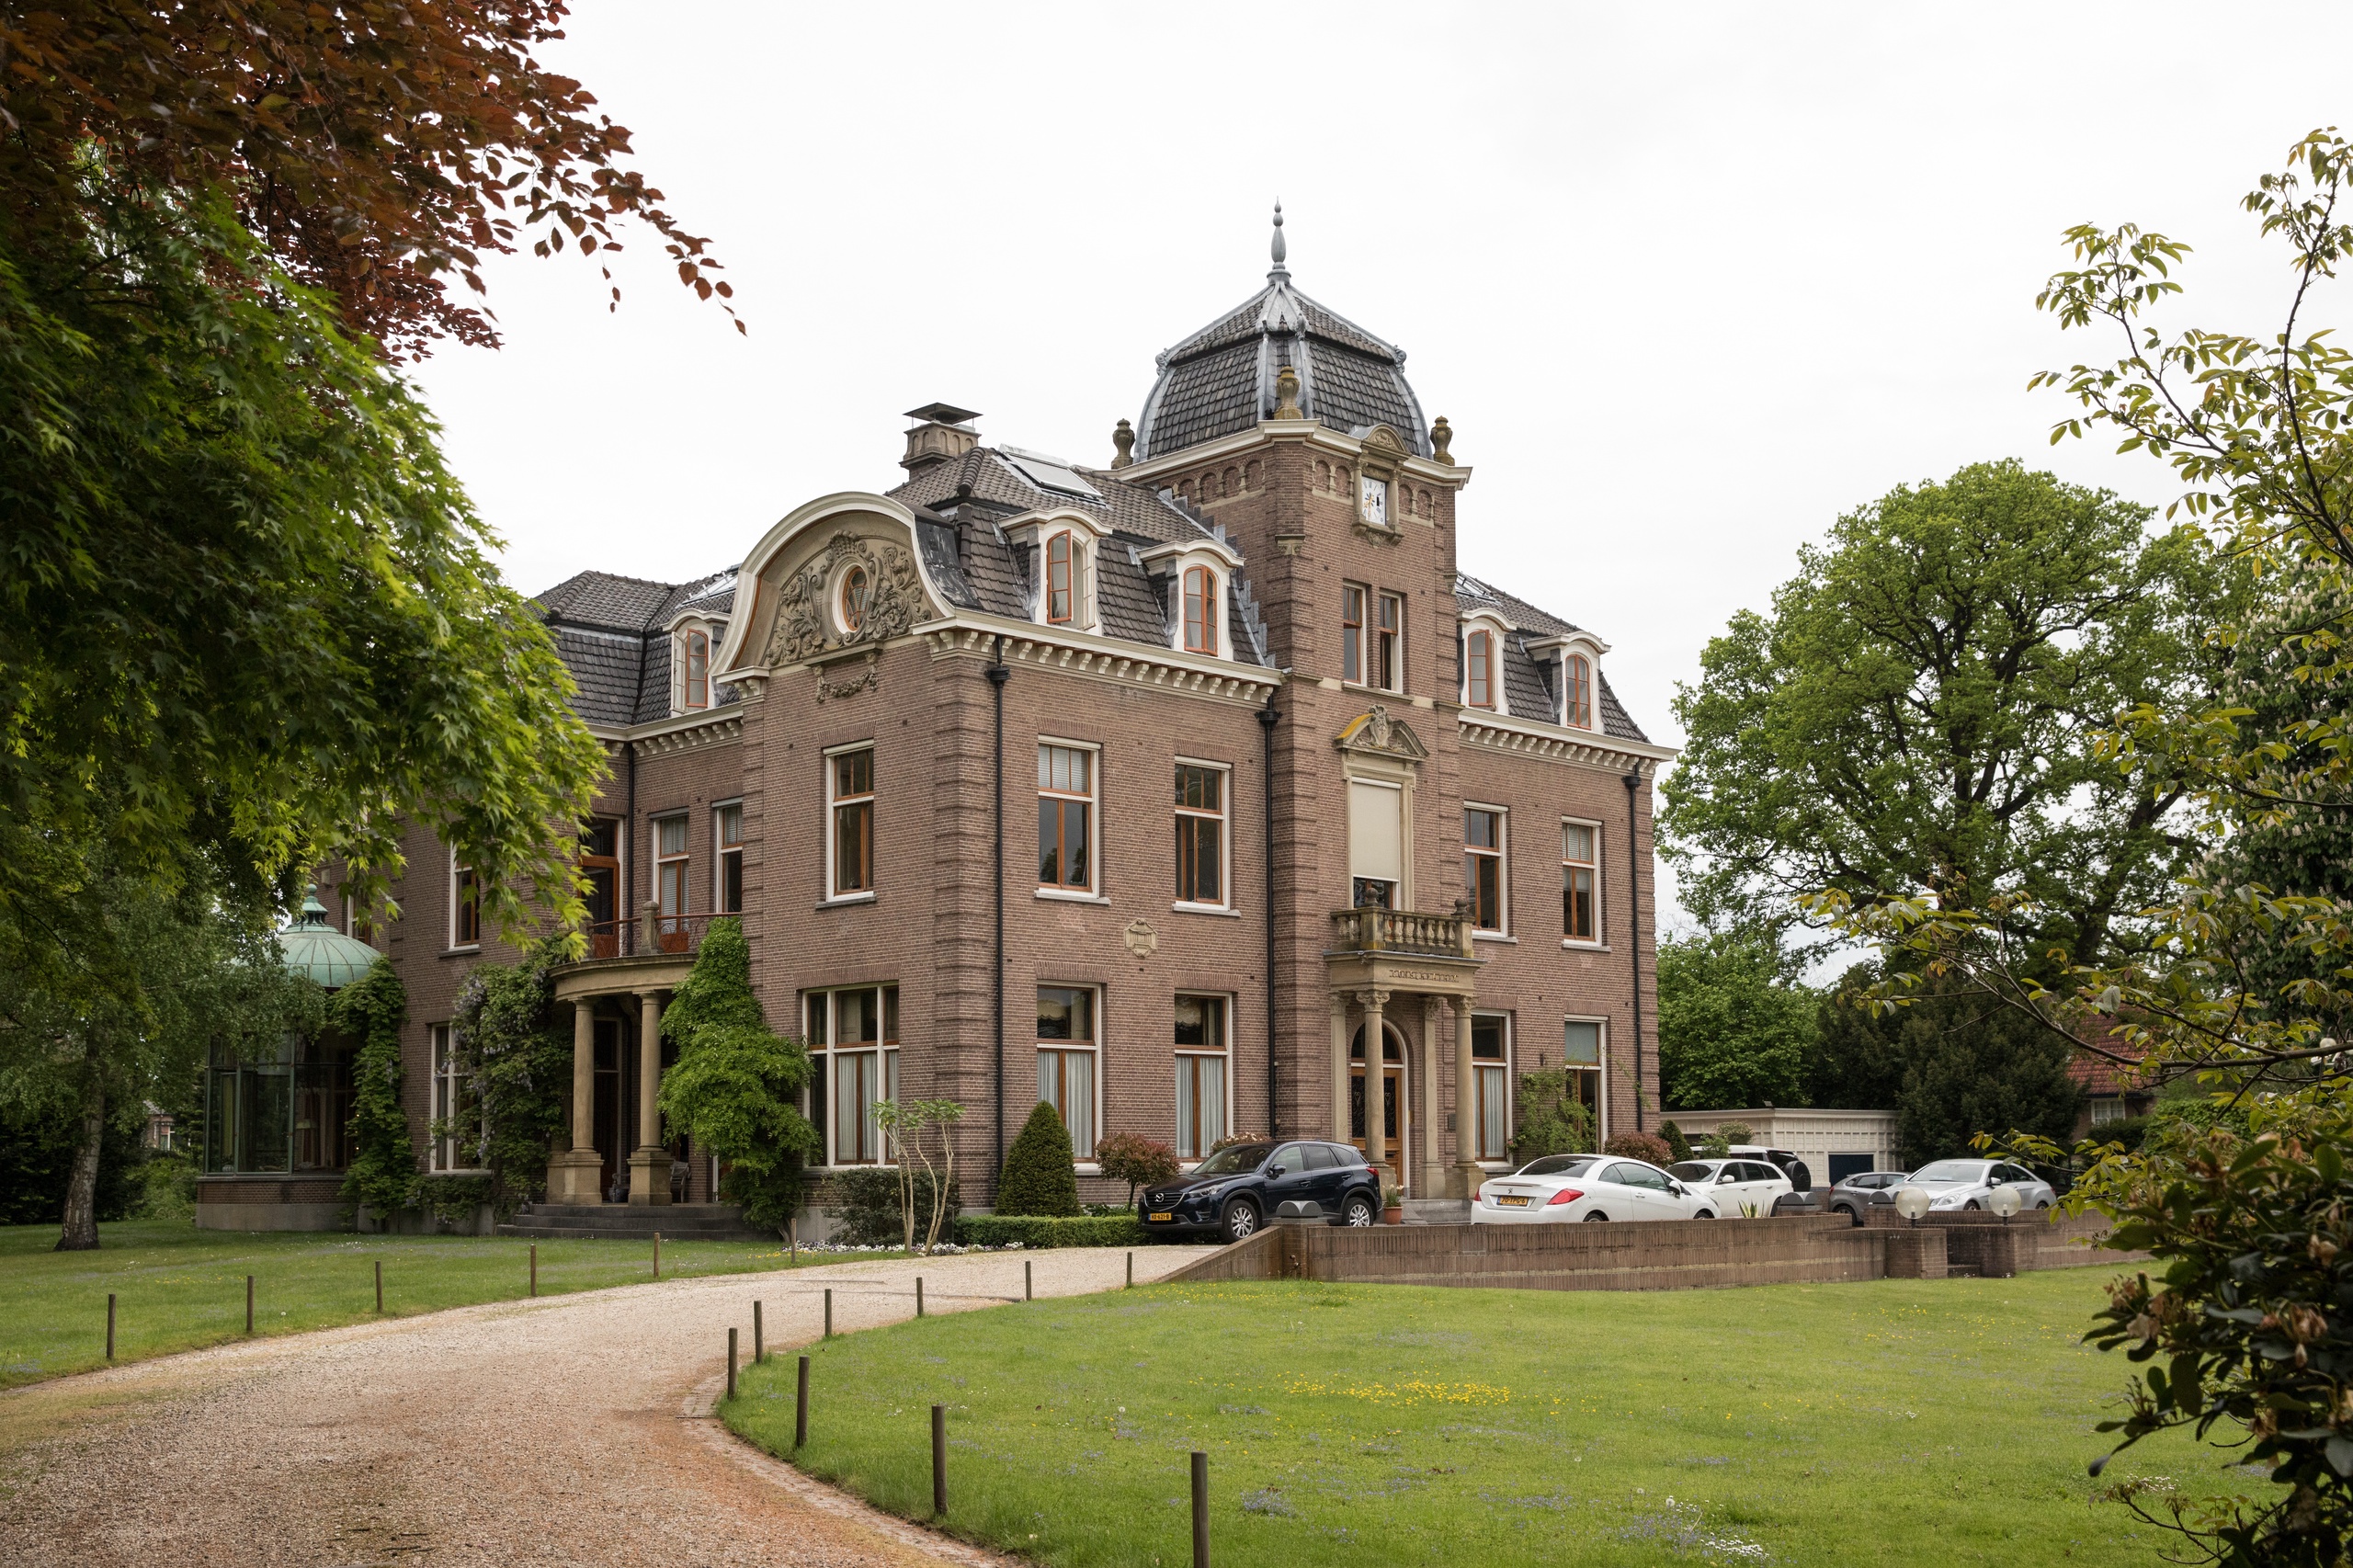 Huize Canton in Baarn waar tot 2017 verzekeraar Conservatrix was gevestigd. De villa was ook de plaats delict van de Baarnse moordzaak waar de broers Henny in de jaren '60 bij betrokken waren. 